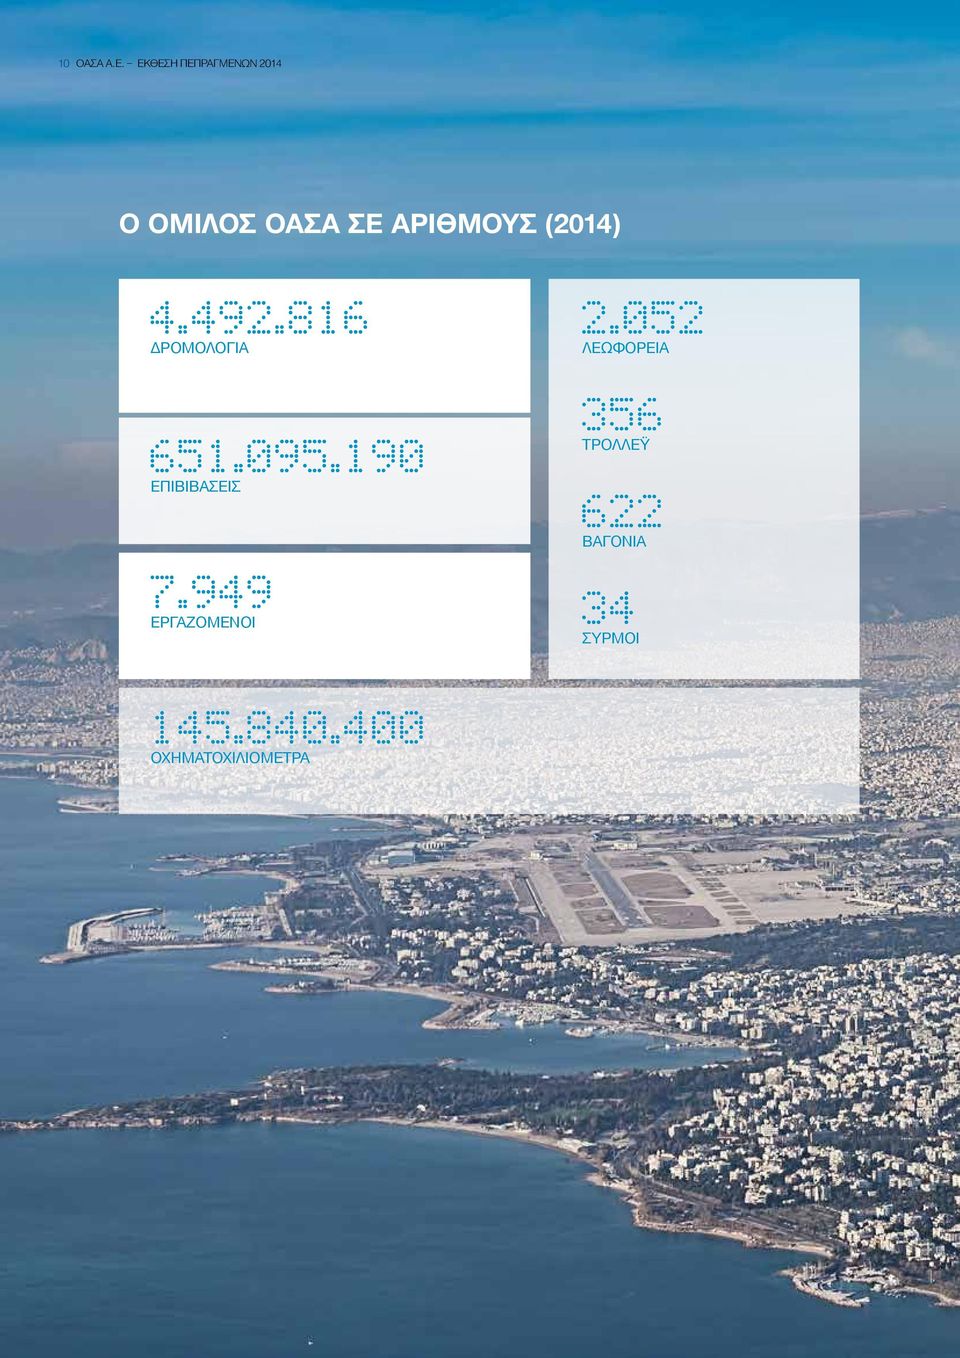 (2014) 4.492.816 ΔΡΟΜΟΛΟΓΙΑ 651.095.